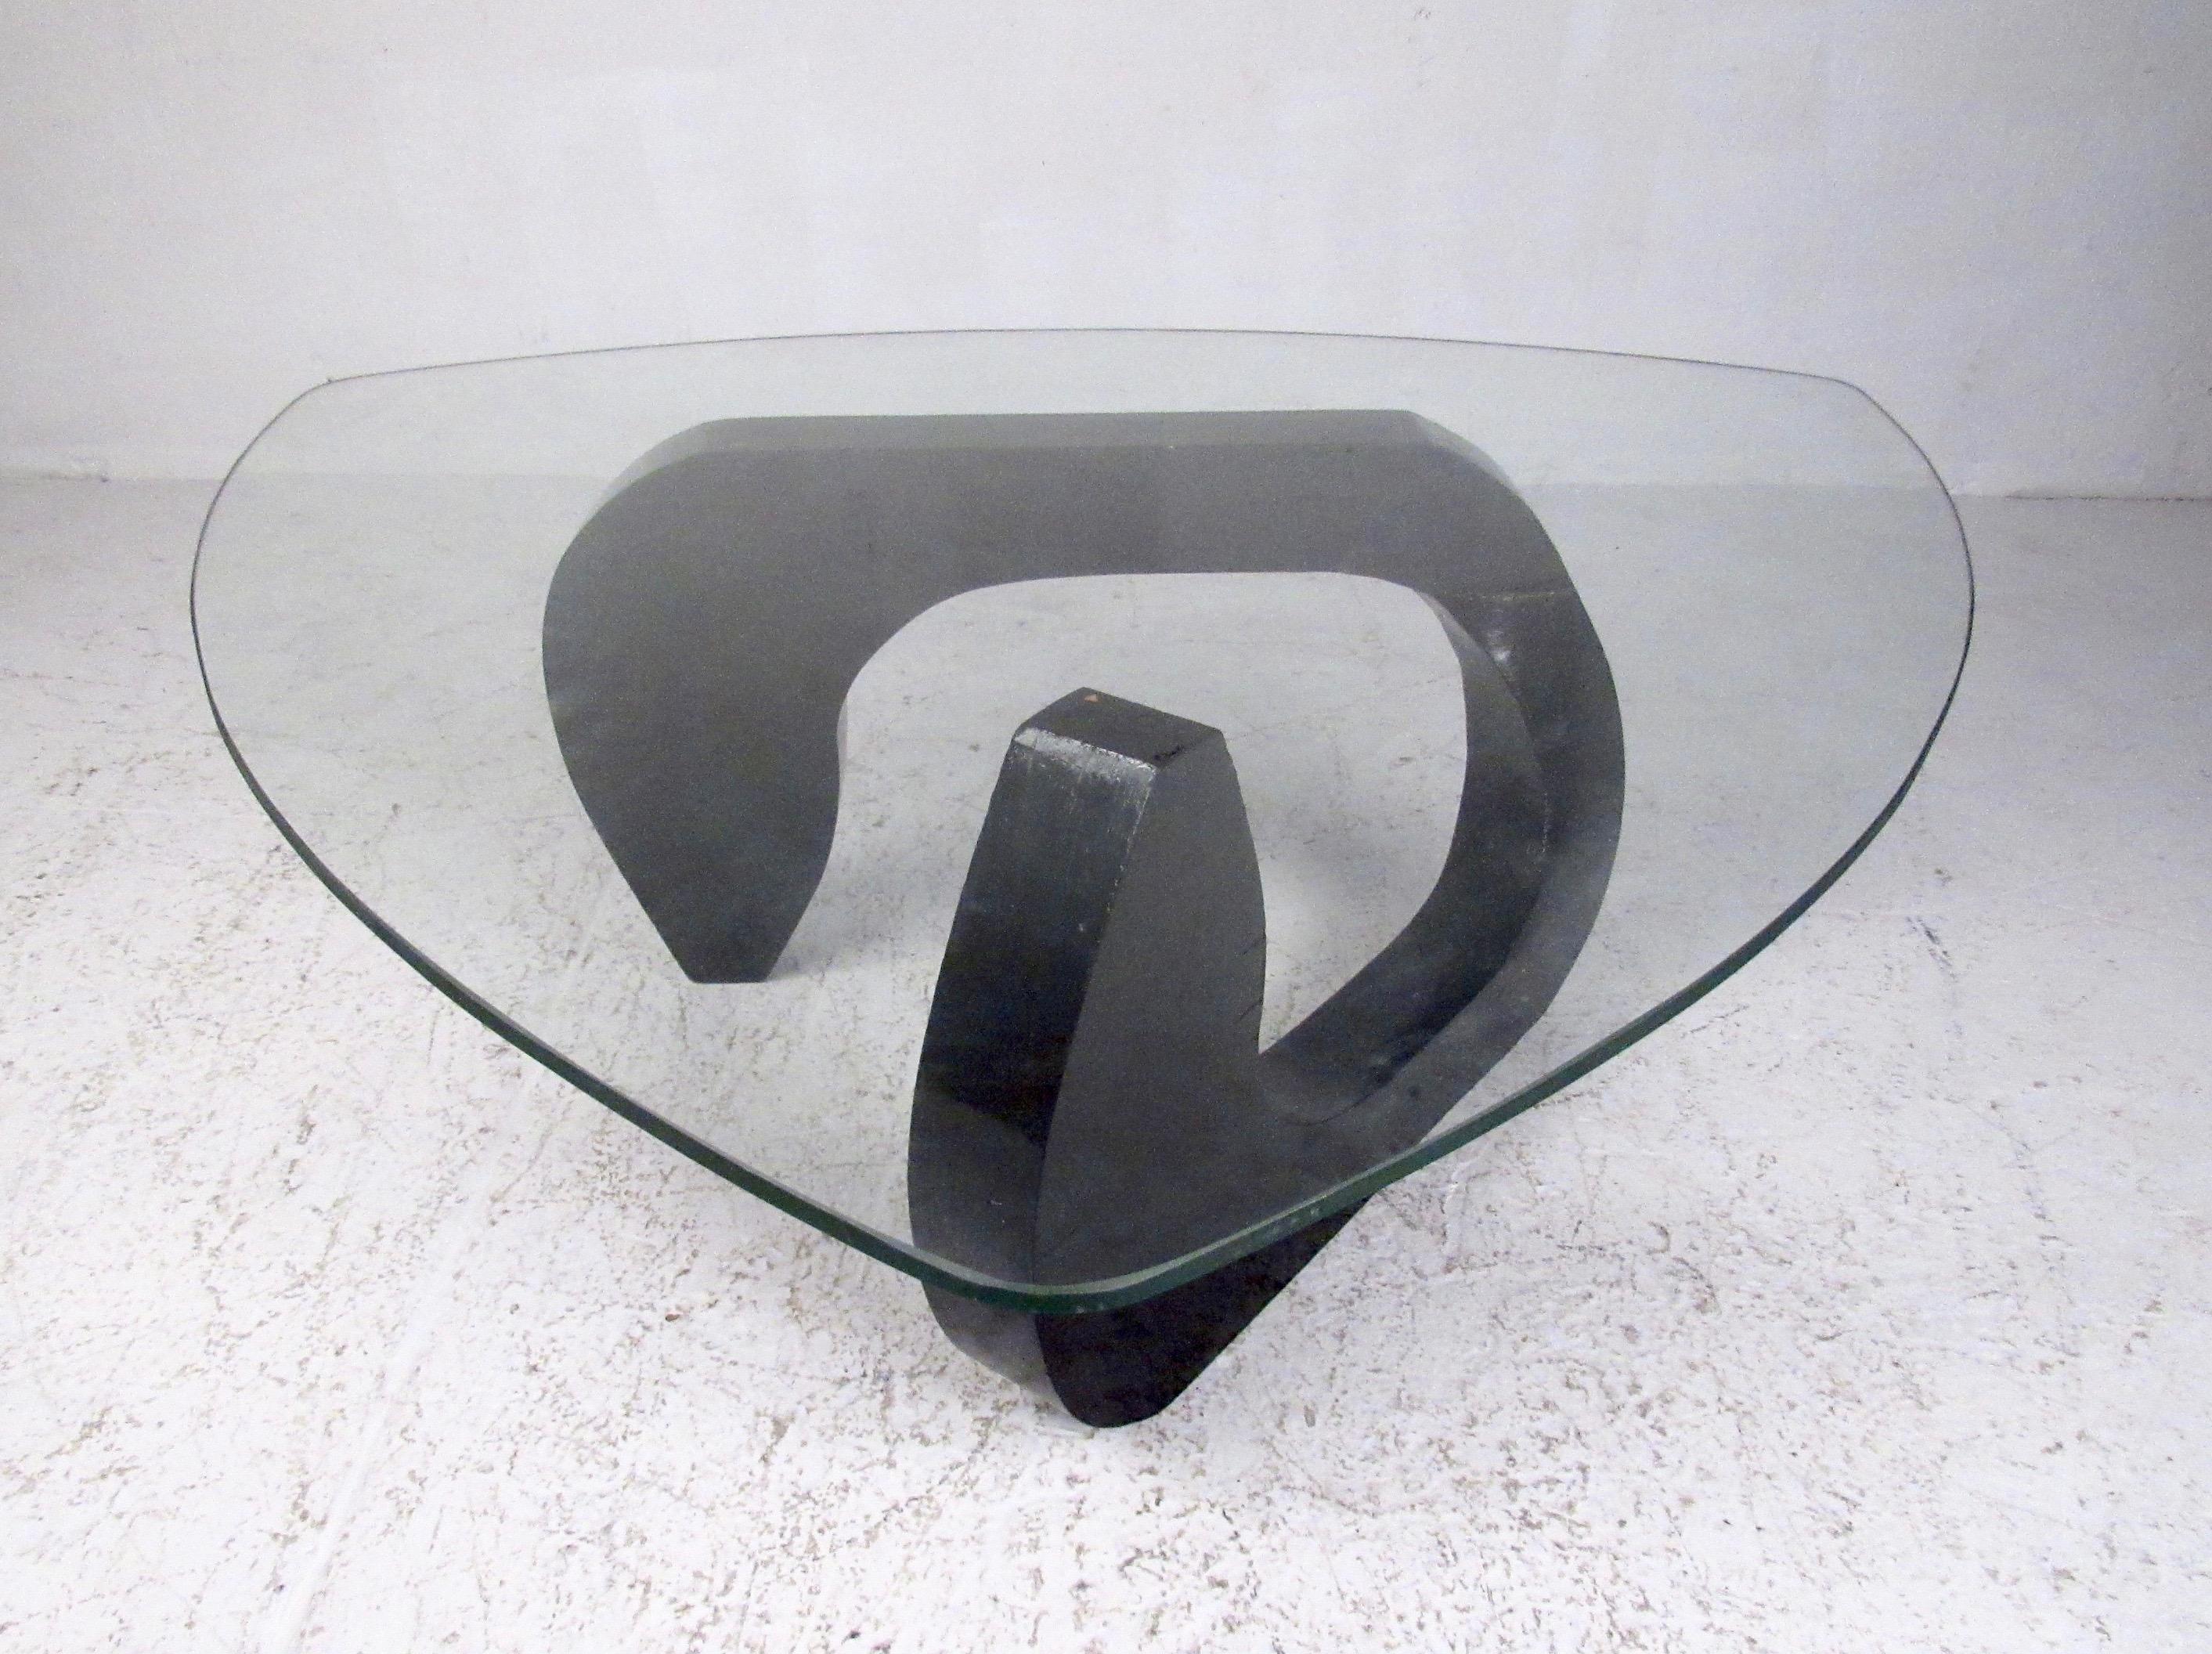 La table basse vintage moderne se caractérise par une base en bois élégante surmontée d'un plateau en verre triangulaire. Elle constitue une pièce maîtresse simple mais élégante pour l'aménagement de la maison ou du bureau. Le style Noguchi de la